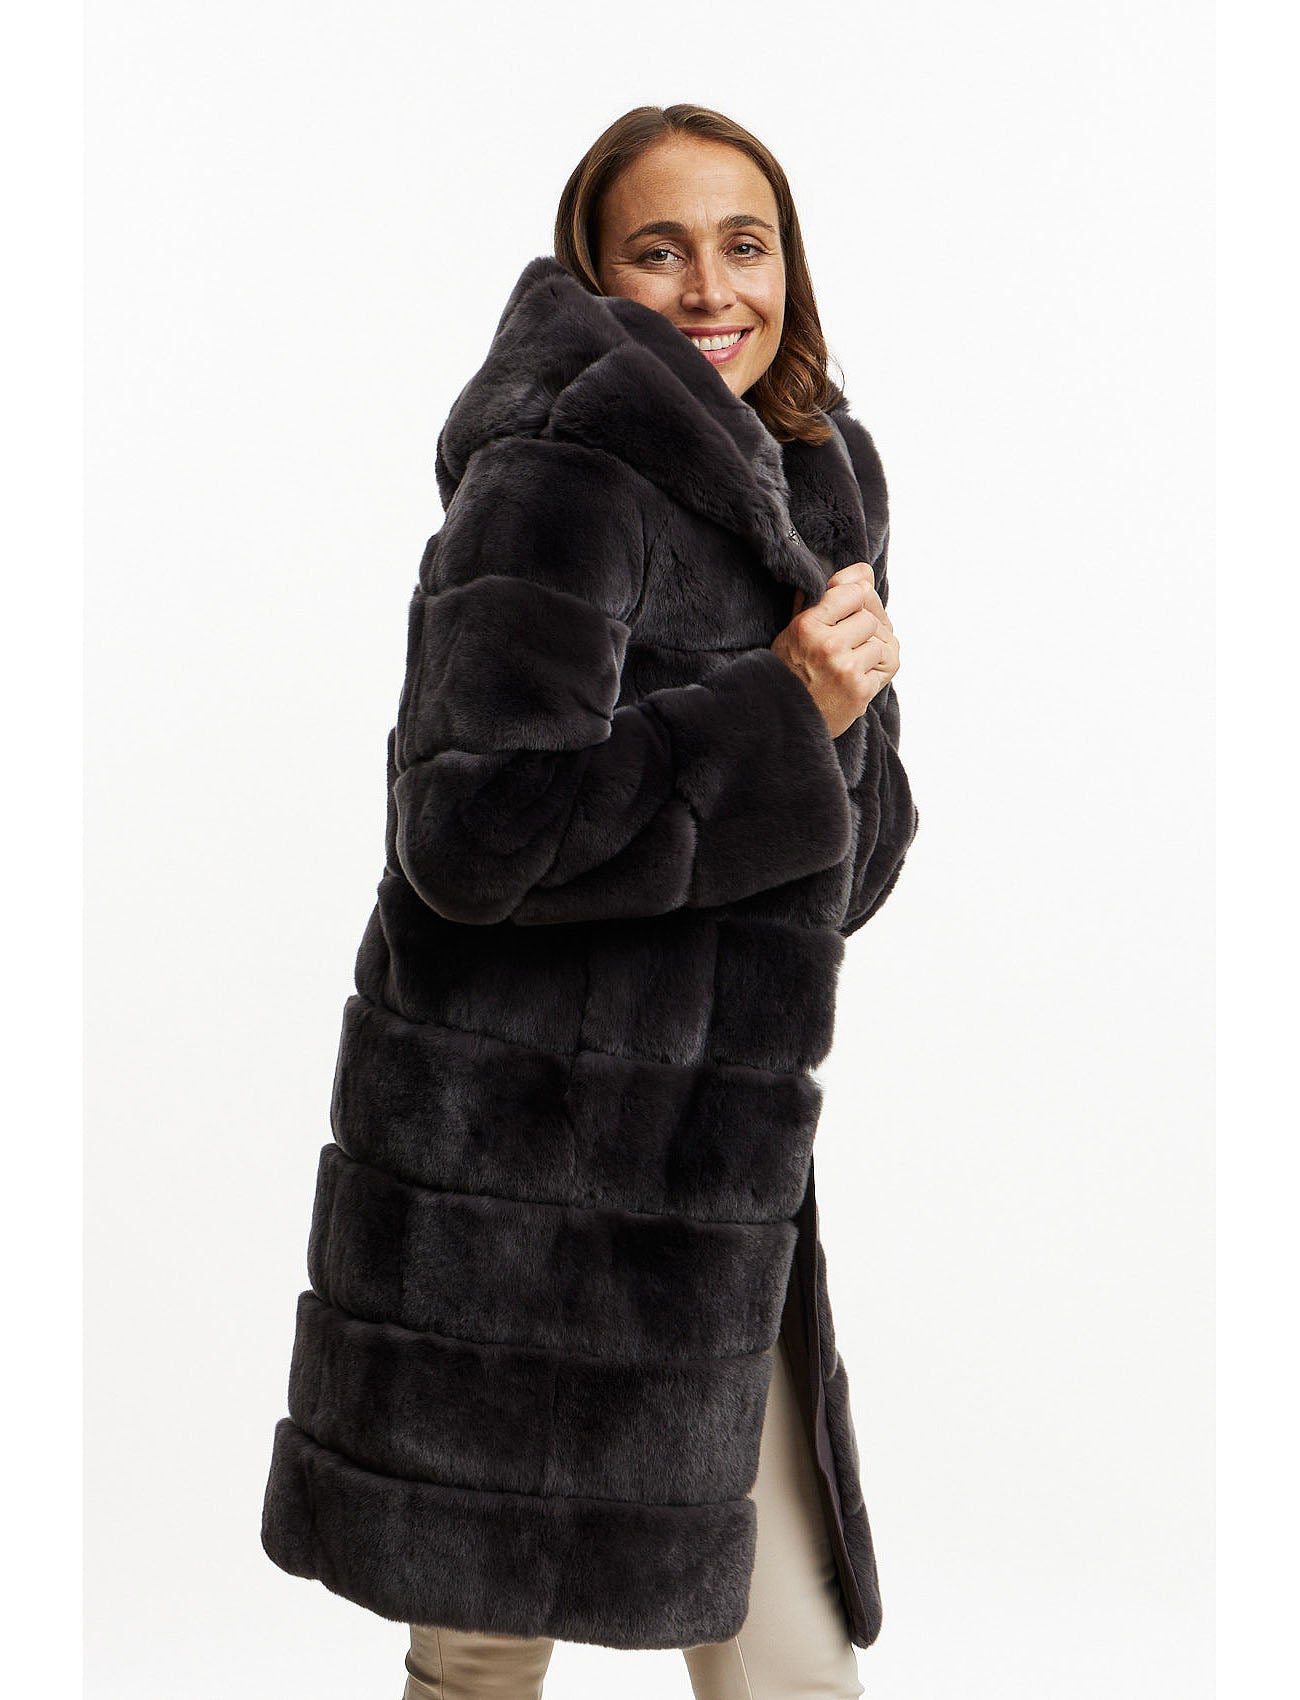 Fur jacket with hood - basalt grey